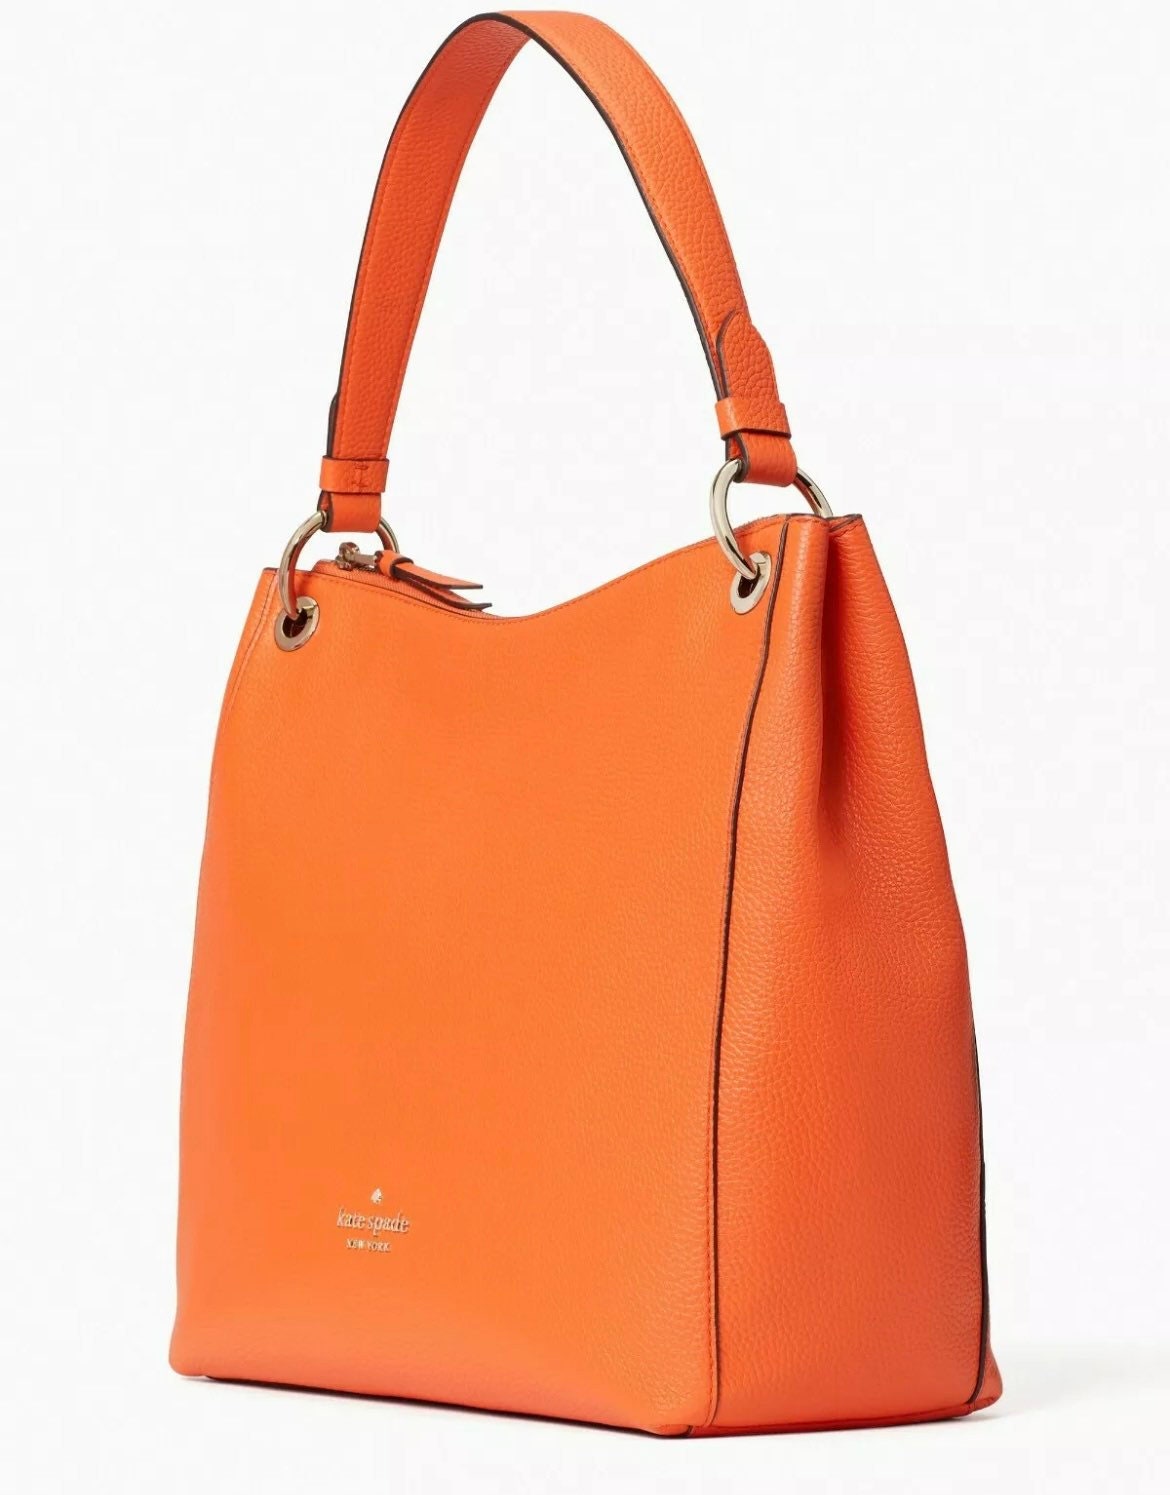 Kate Spade Kat Shoulder Bag Orange Leather Large Hobo WKR00311 - Etsy